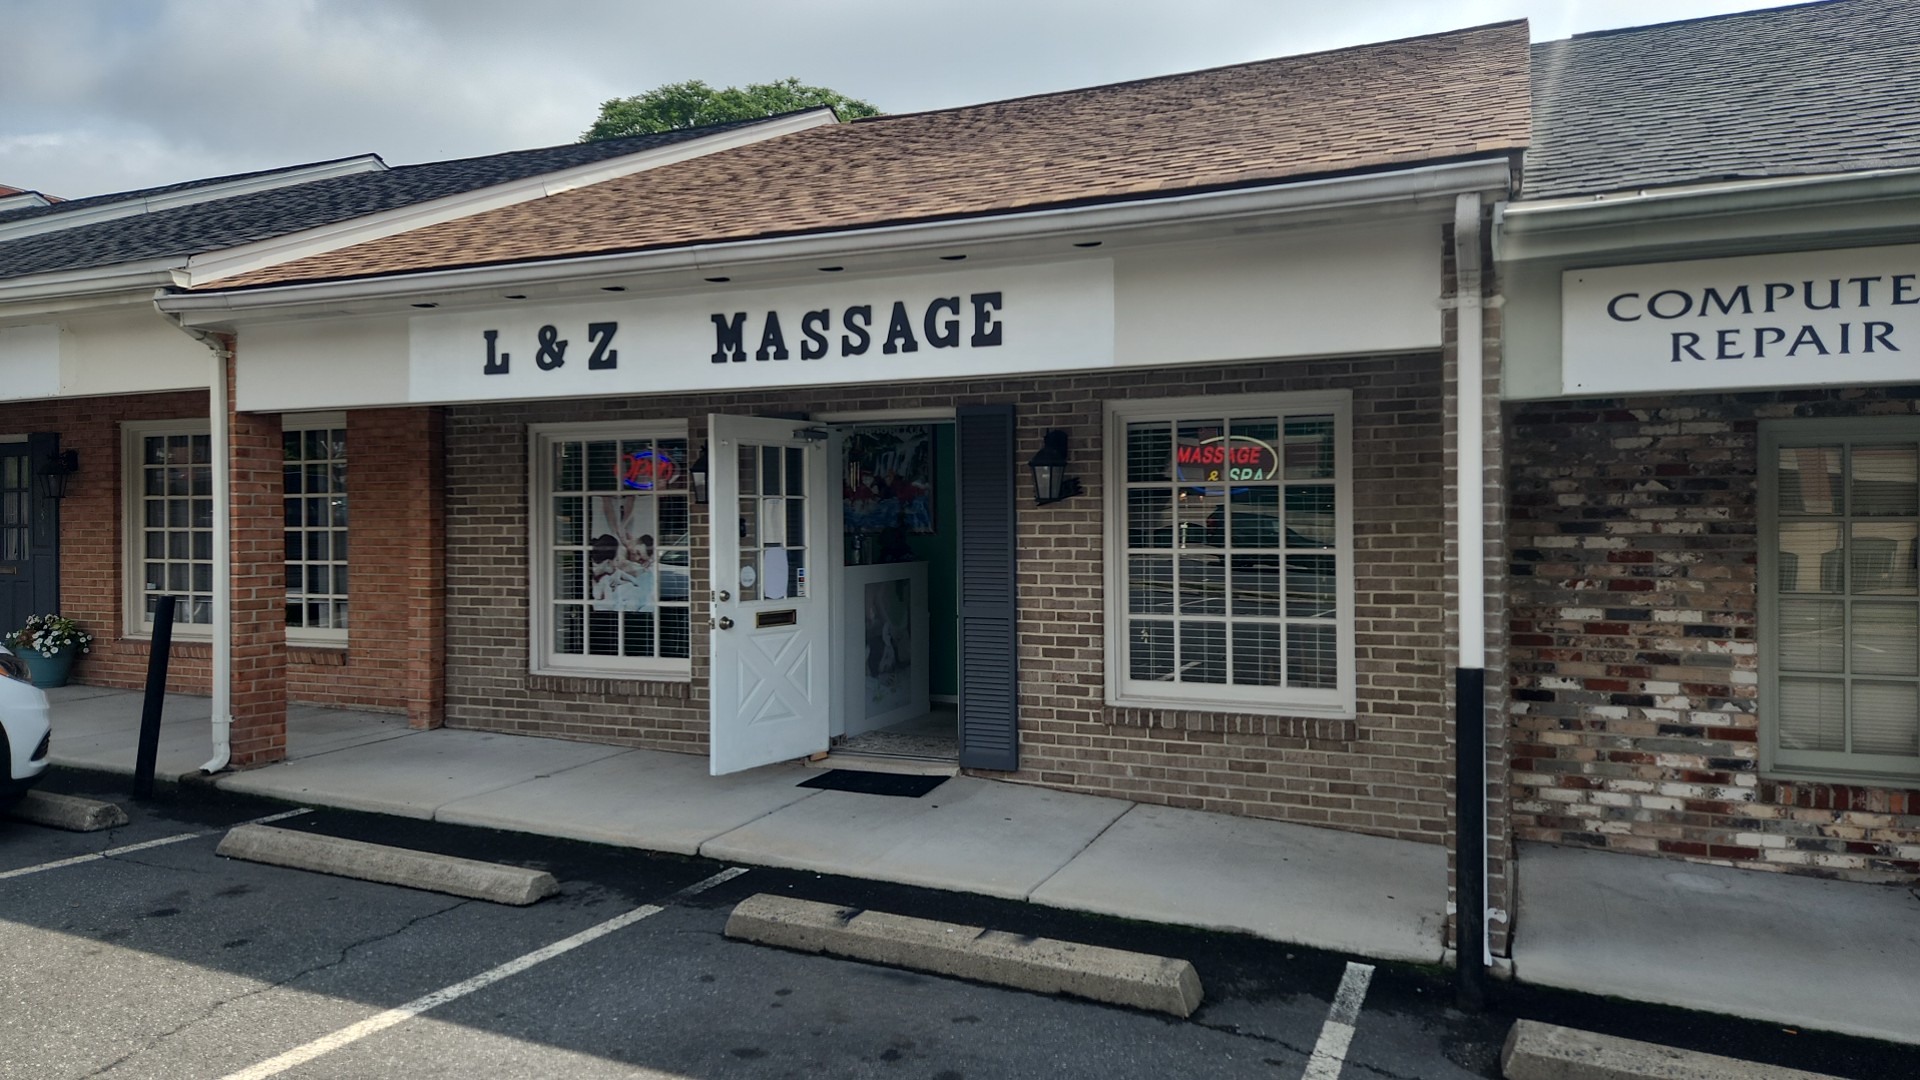 L & Z Massage